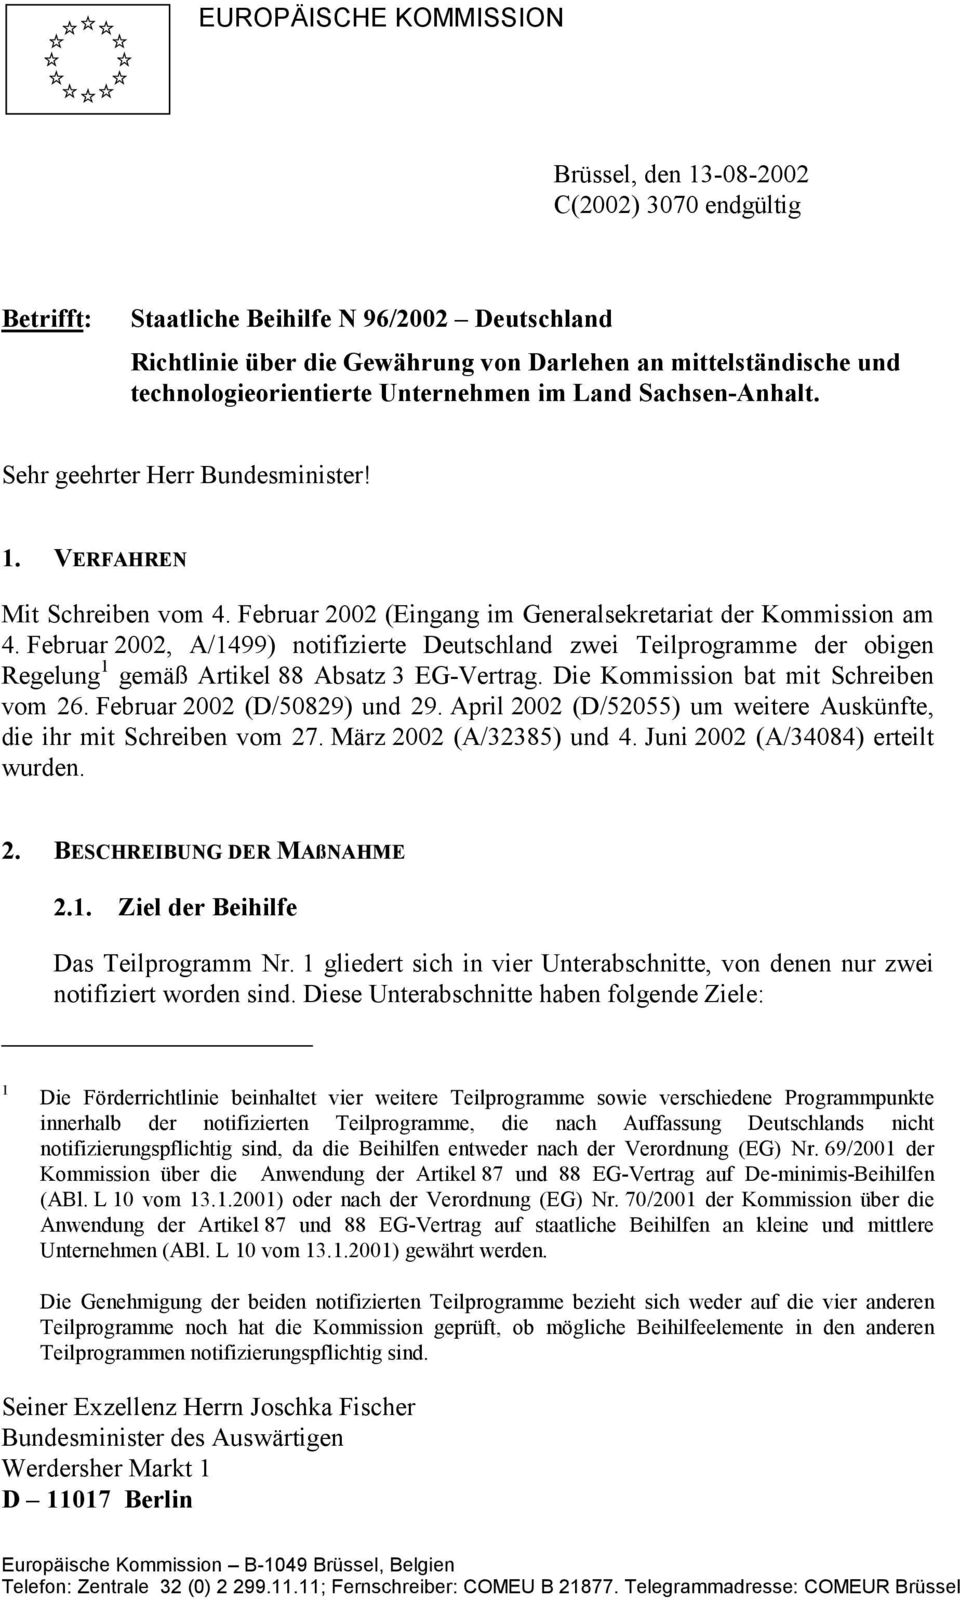 Februar 2002, A/1499) notifizierte Deutschland zwei Teilprogramme der obigen Regelung 1 gemäß Artikel 88 Absatz 3 EG-Vertrag. Die Kommission bat mit Schreiben vom 26. Februar 2002 (D/50829) und 29.